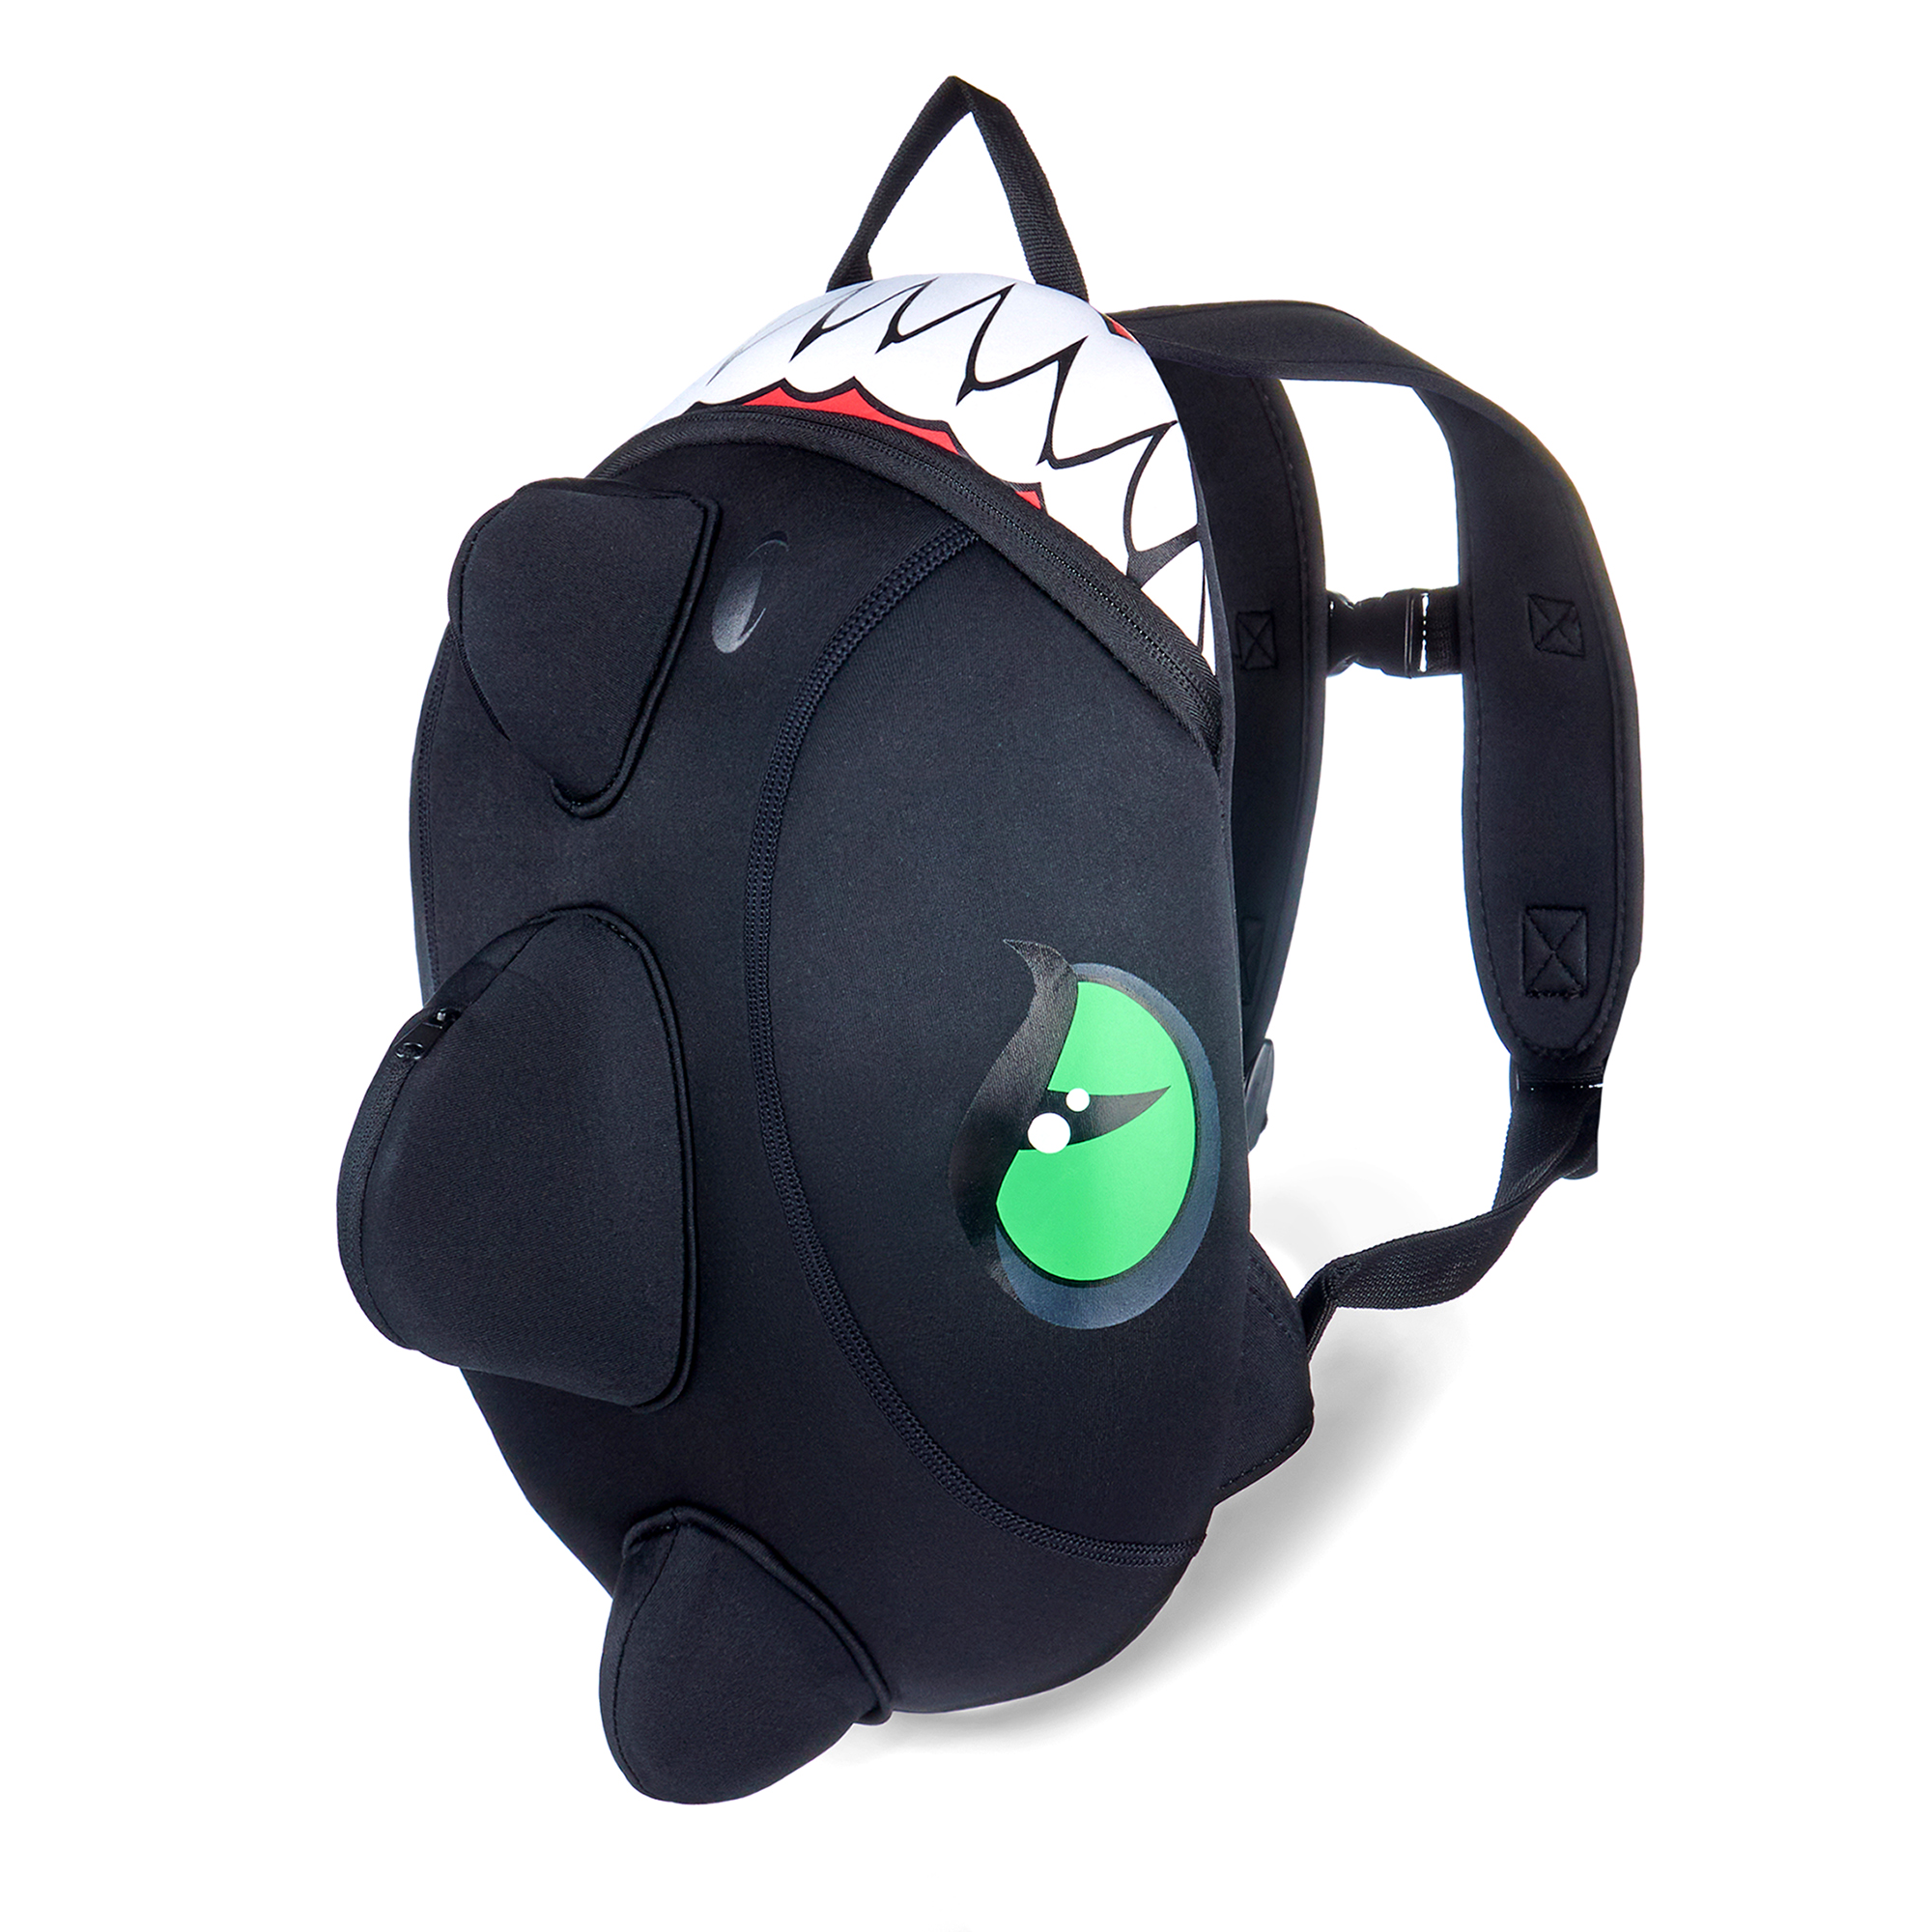 Billede af Crazy Safety sort drage rygsæk til børn Slidstærk neoprentaske med mange funktioner. Testet og godkendt til børn